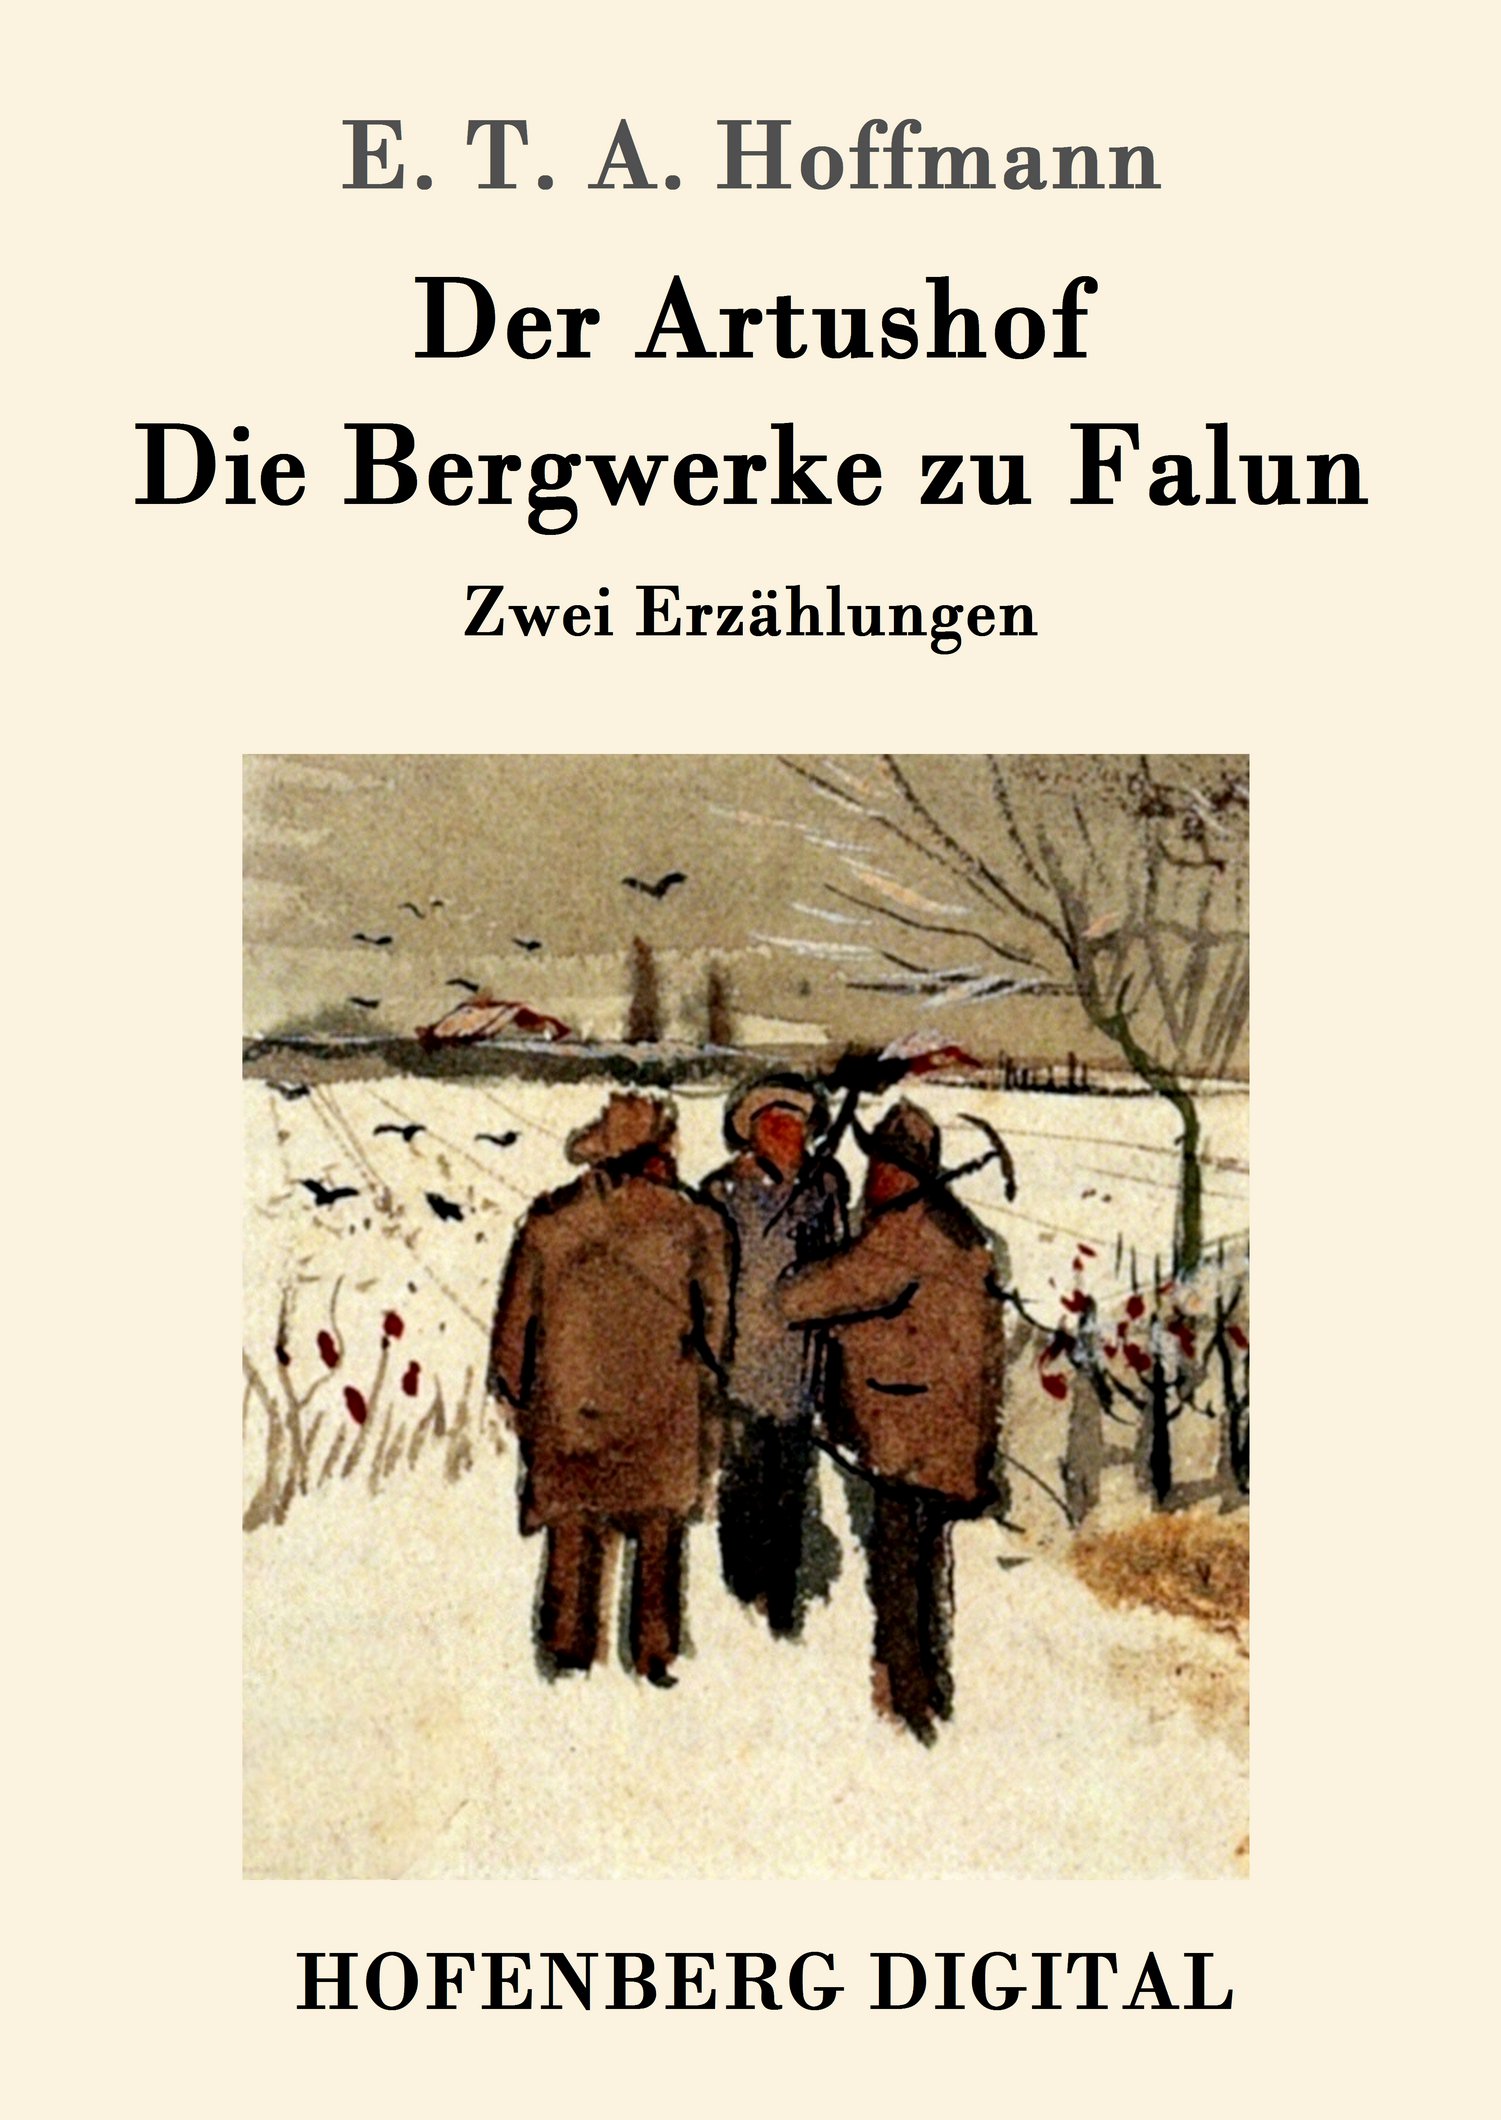 E. T. A. Hoffmann: Der Artushof / Die Bergwerke zu Falun